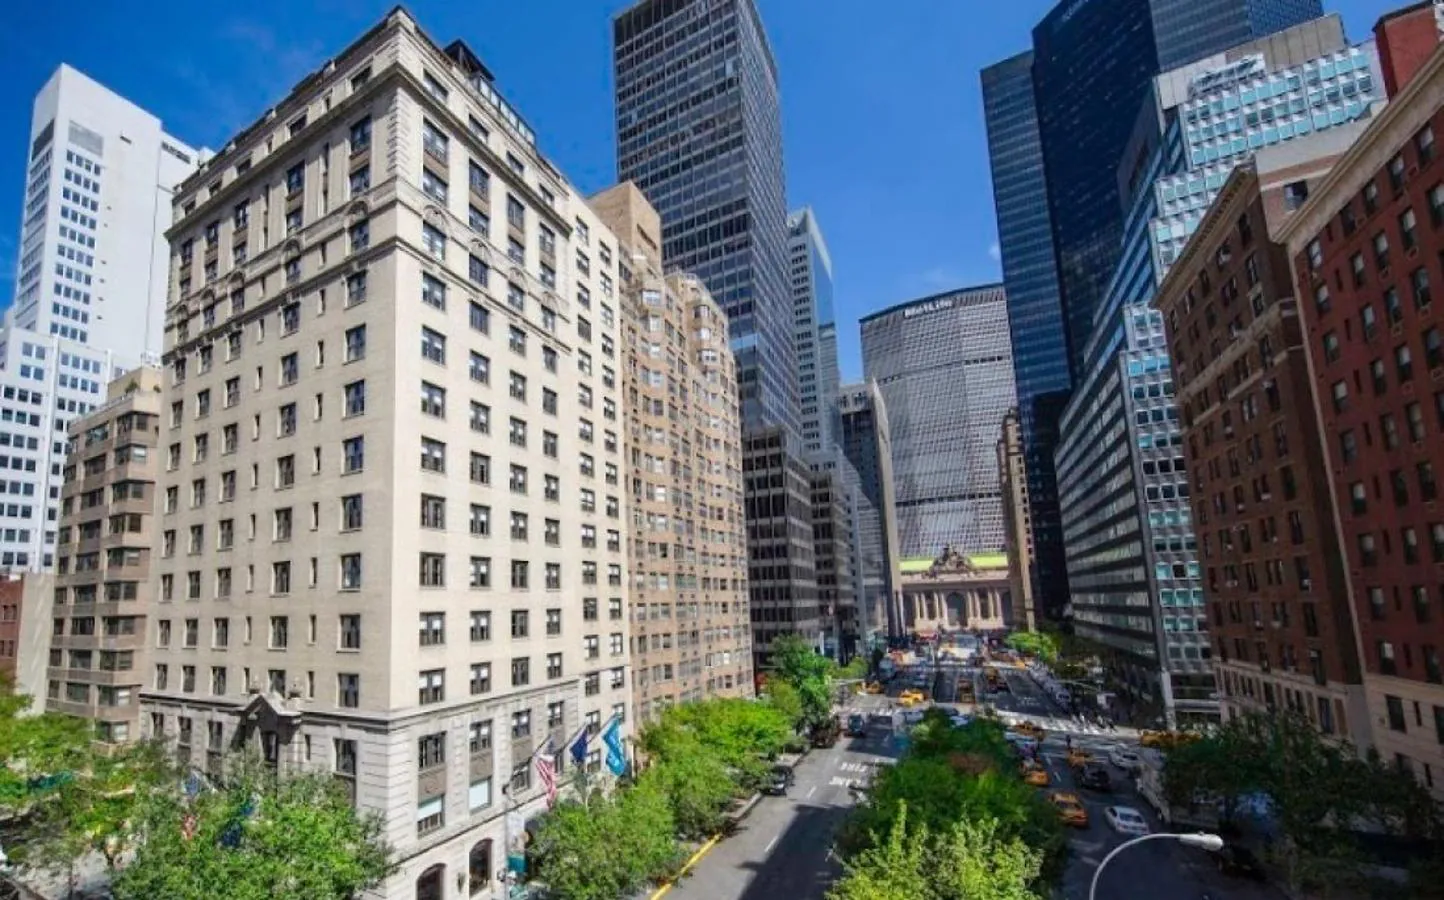 Hotel en Nueva York: 62 millones de €. En 2016 compró un hotel en el 70 Park Avenue. Está gestionado por Iberostar